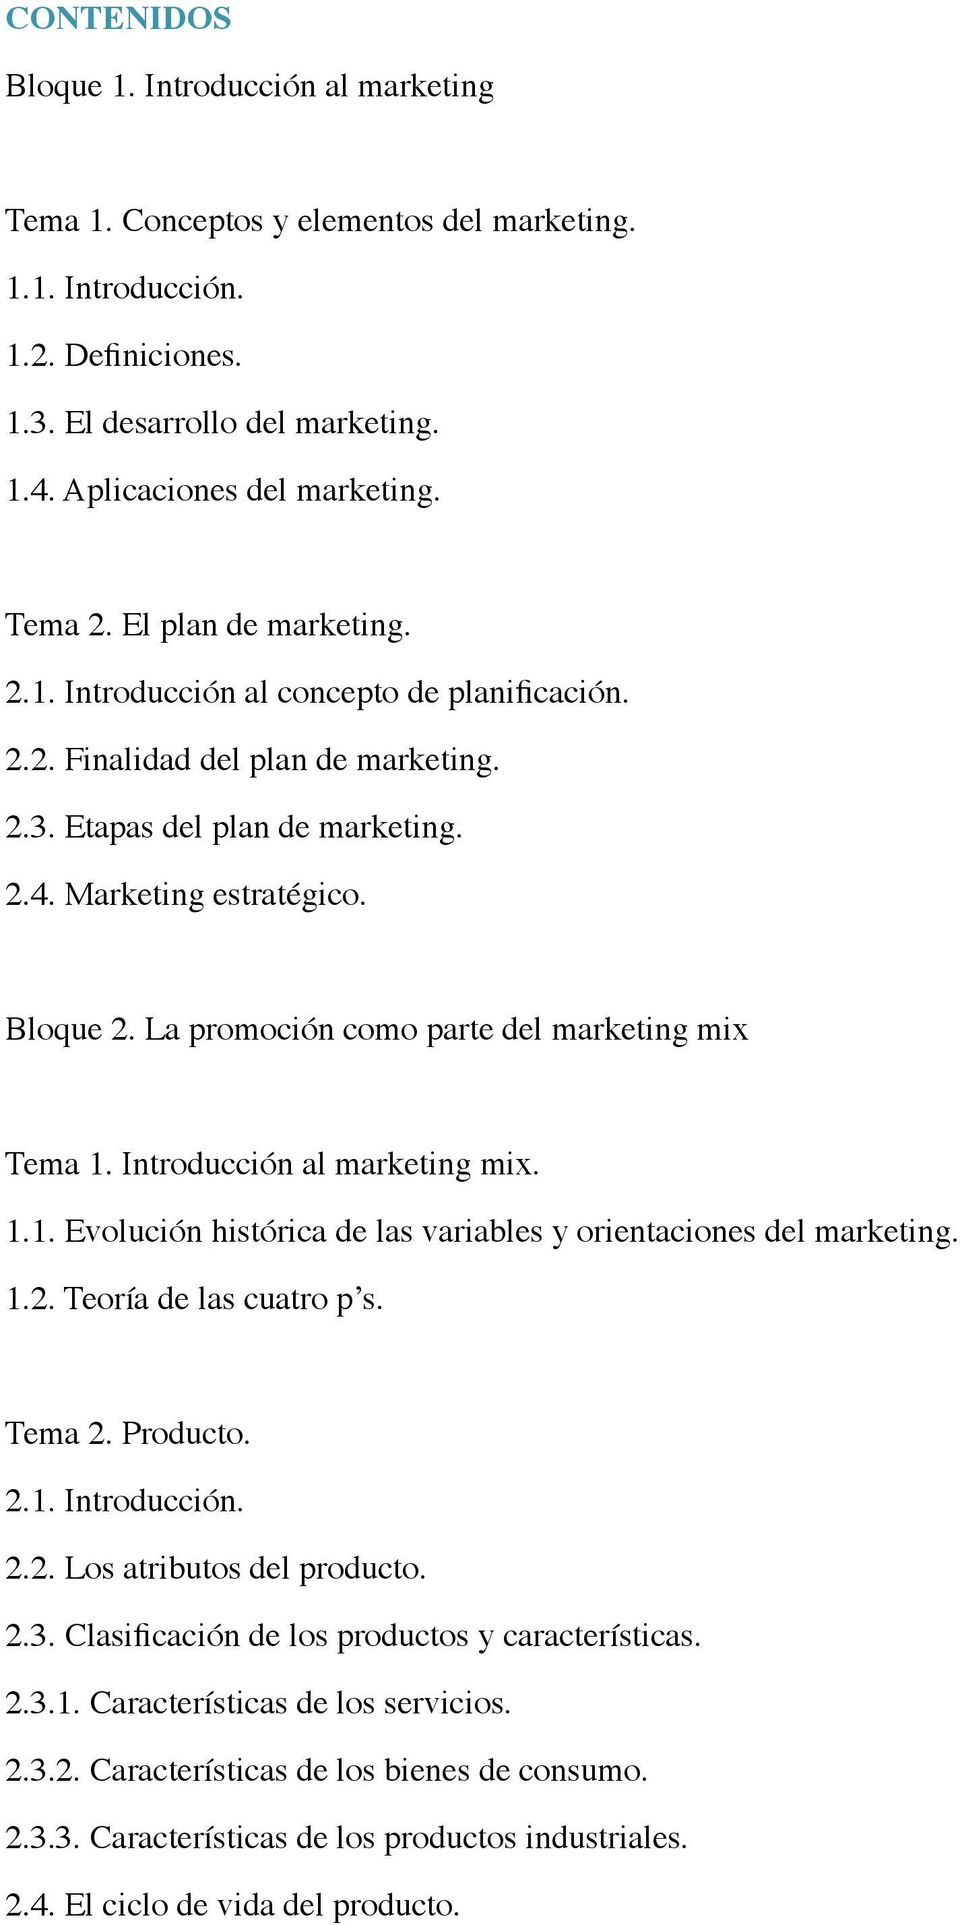 La promoción como parte del marketing mix Tema 1. Introducción al marketing mix. 1.1. Evolución histórica de las variables y orientaciones del marketing. 1.2. Teoría de las cuatro p s. Tema 2.